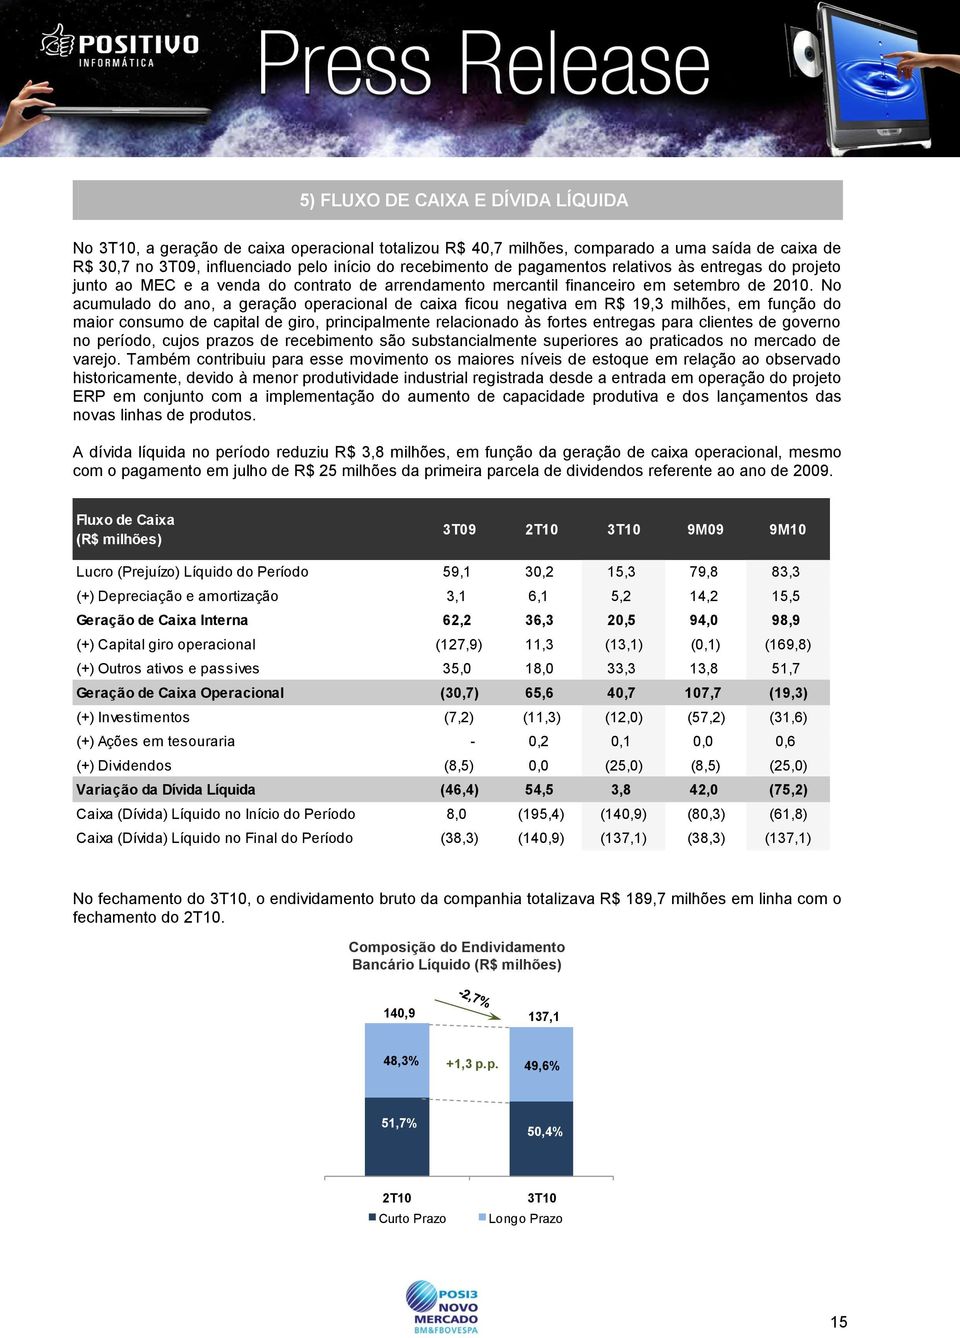 No acumulado do ano, a geração operacional de caixa ficou negativa em R$ 19,3 milhões, em função do maior consumo de capital de giro, principalmente relacionado às fortes entregas para clientes de